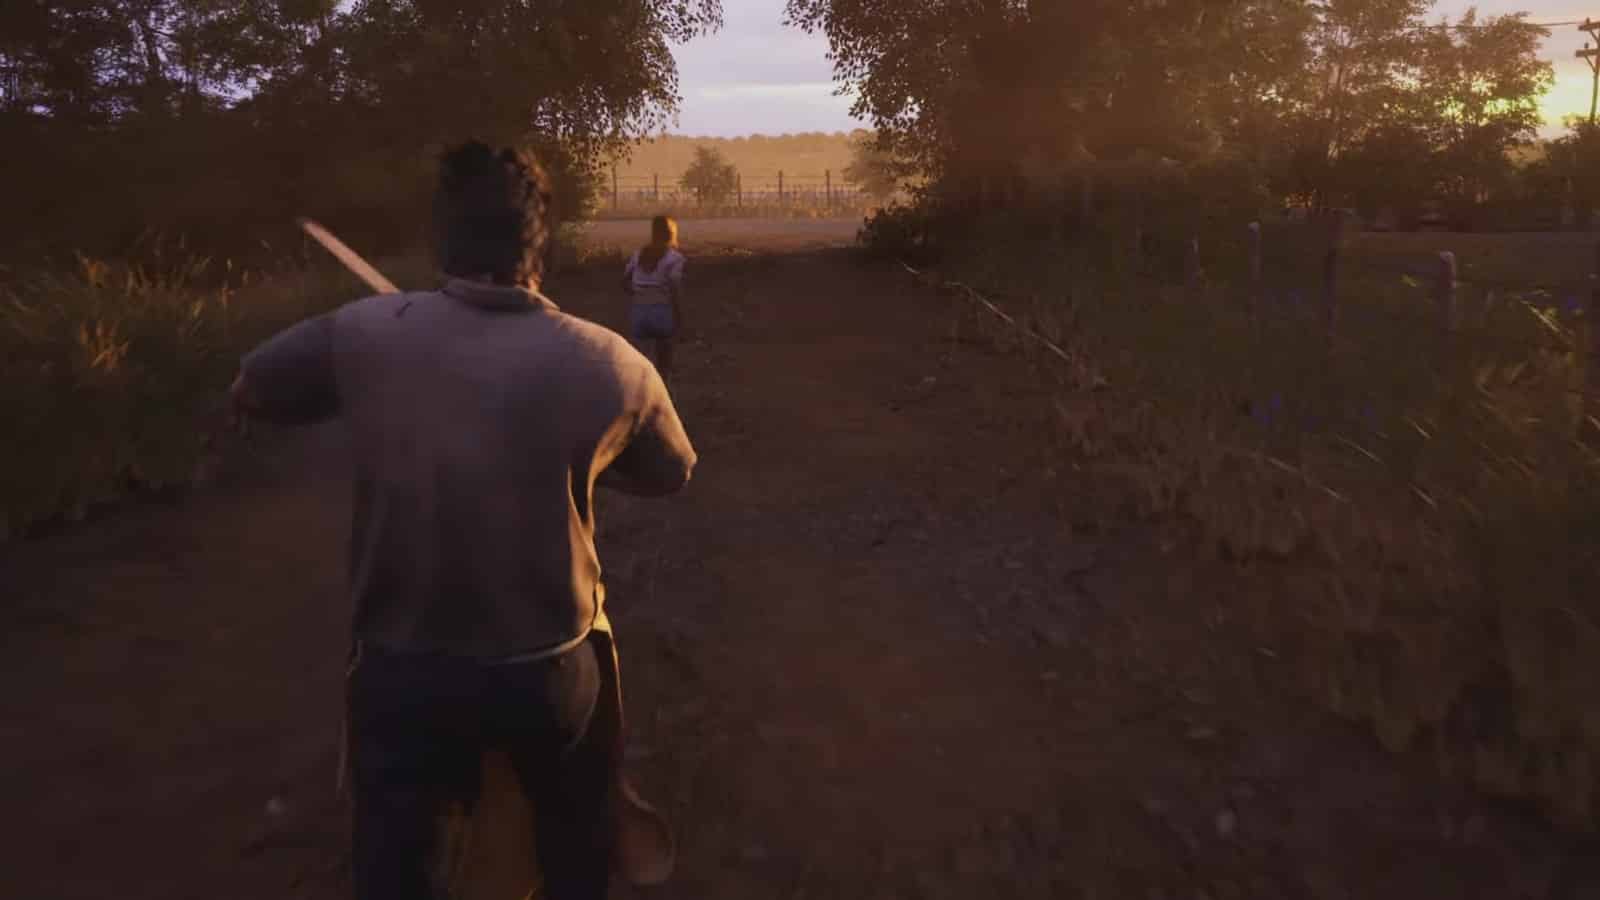 The Texas Chain Saw Massacre chega em 2023 no PC, consoles e Game